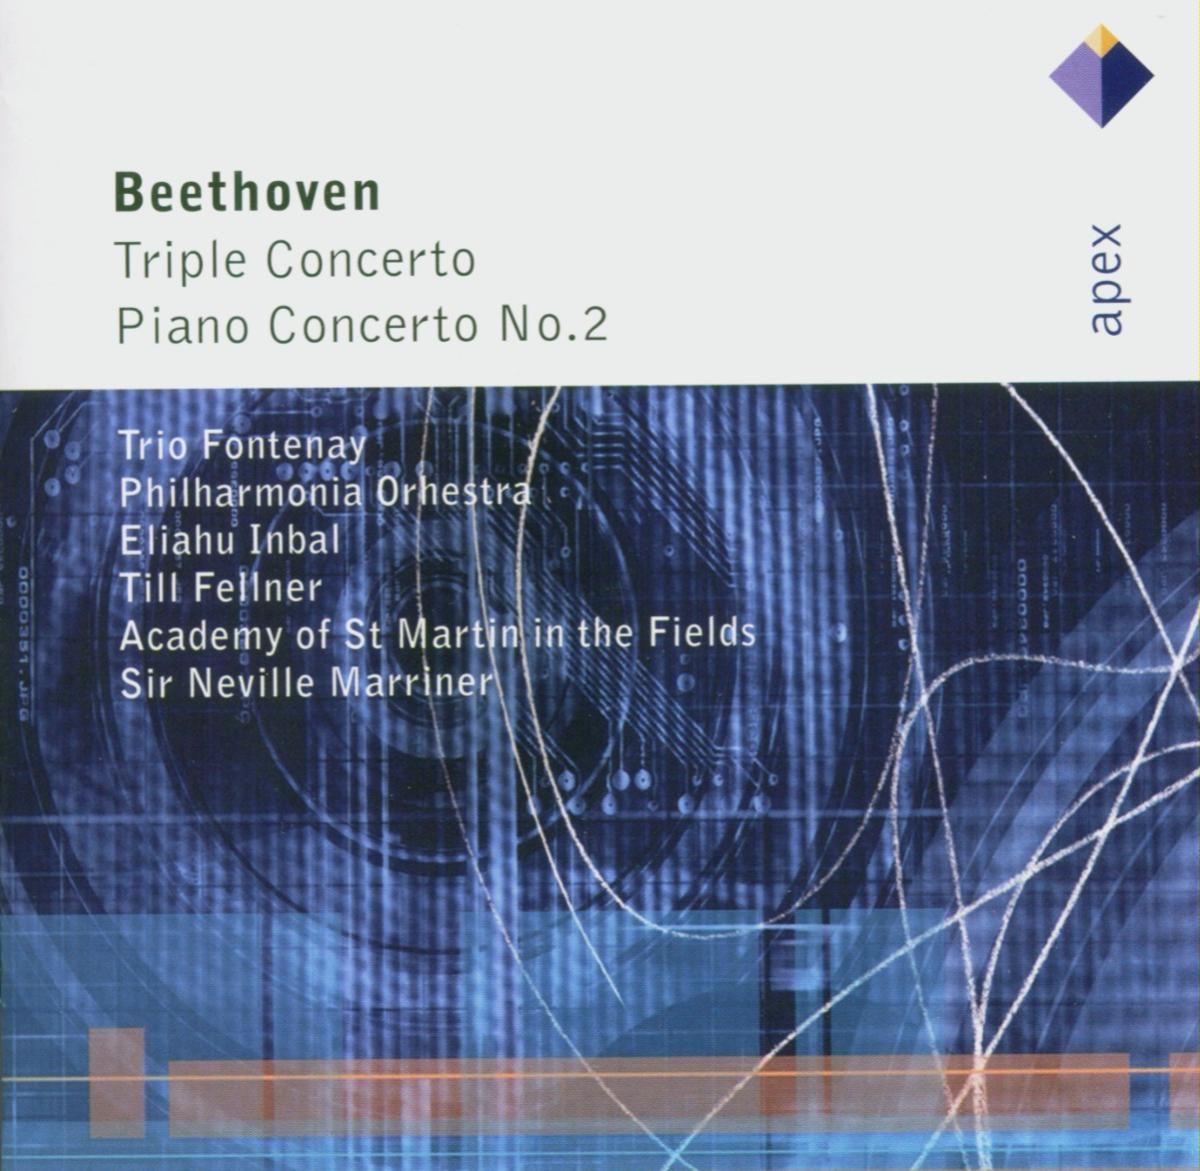 Beethoven : Piano Concerto No.2 in B flat major Op.19 : III Rondo - Molto allegro